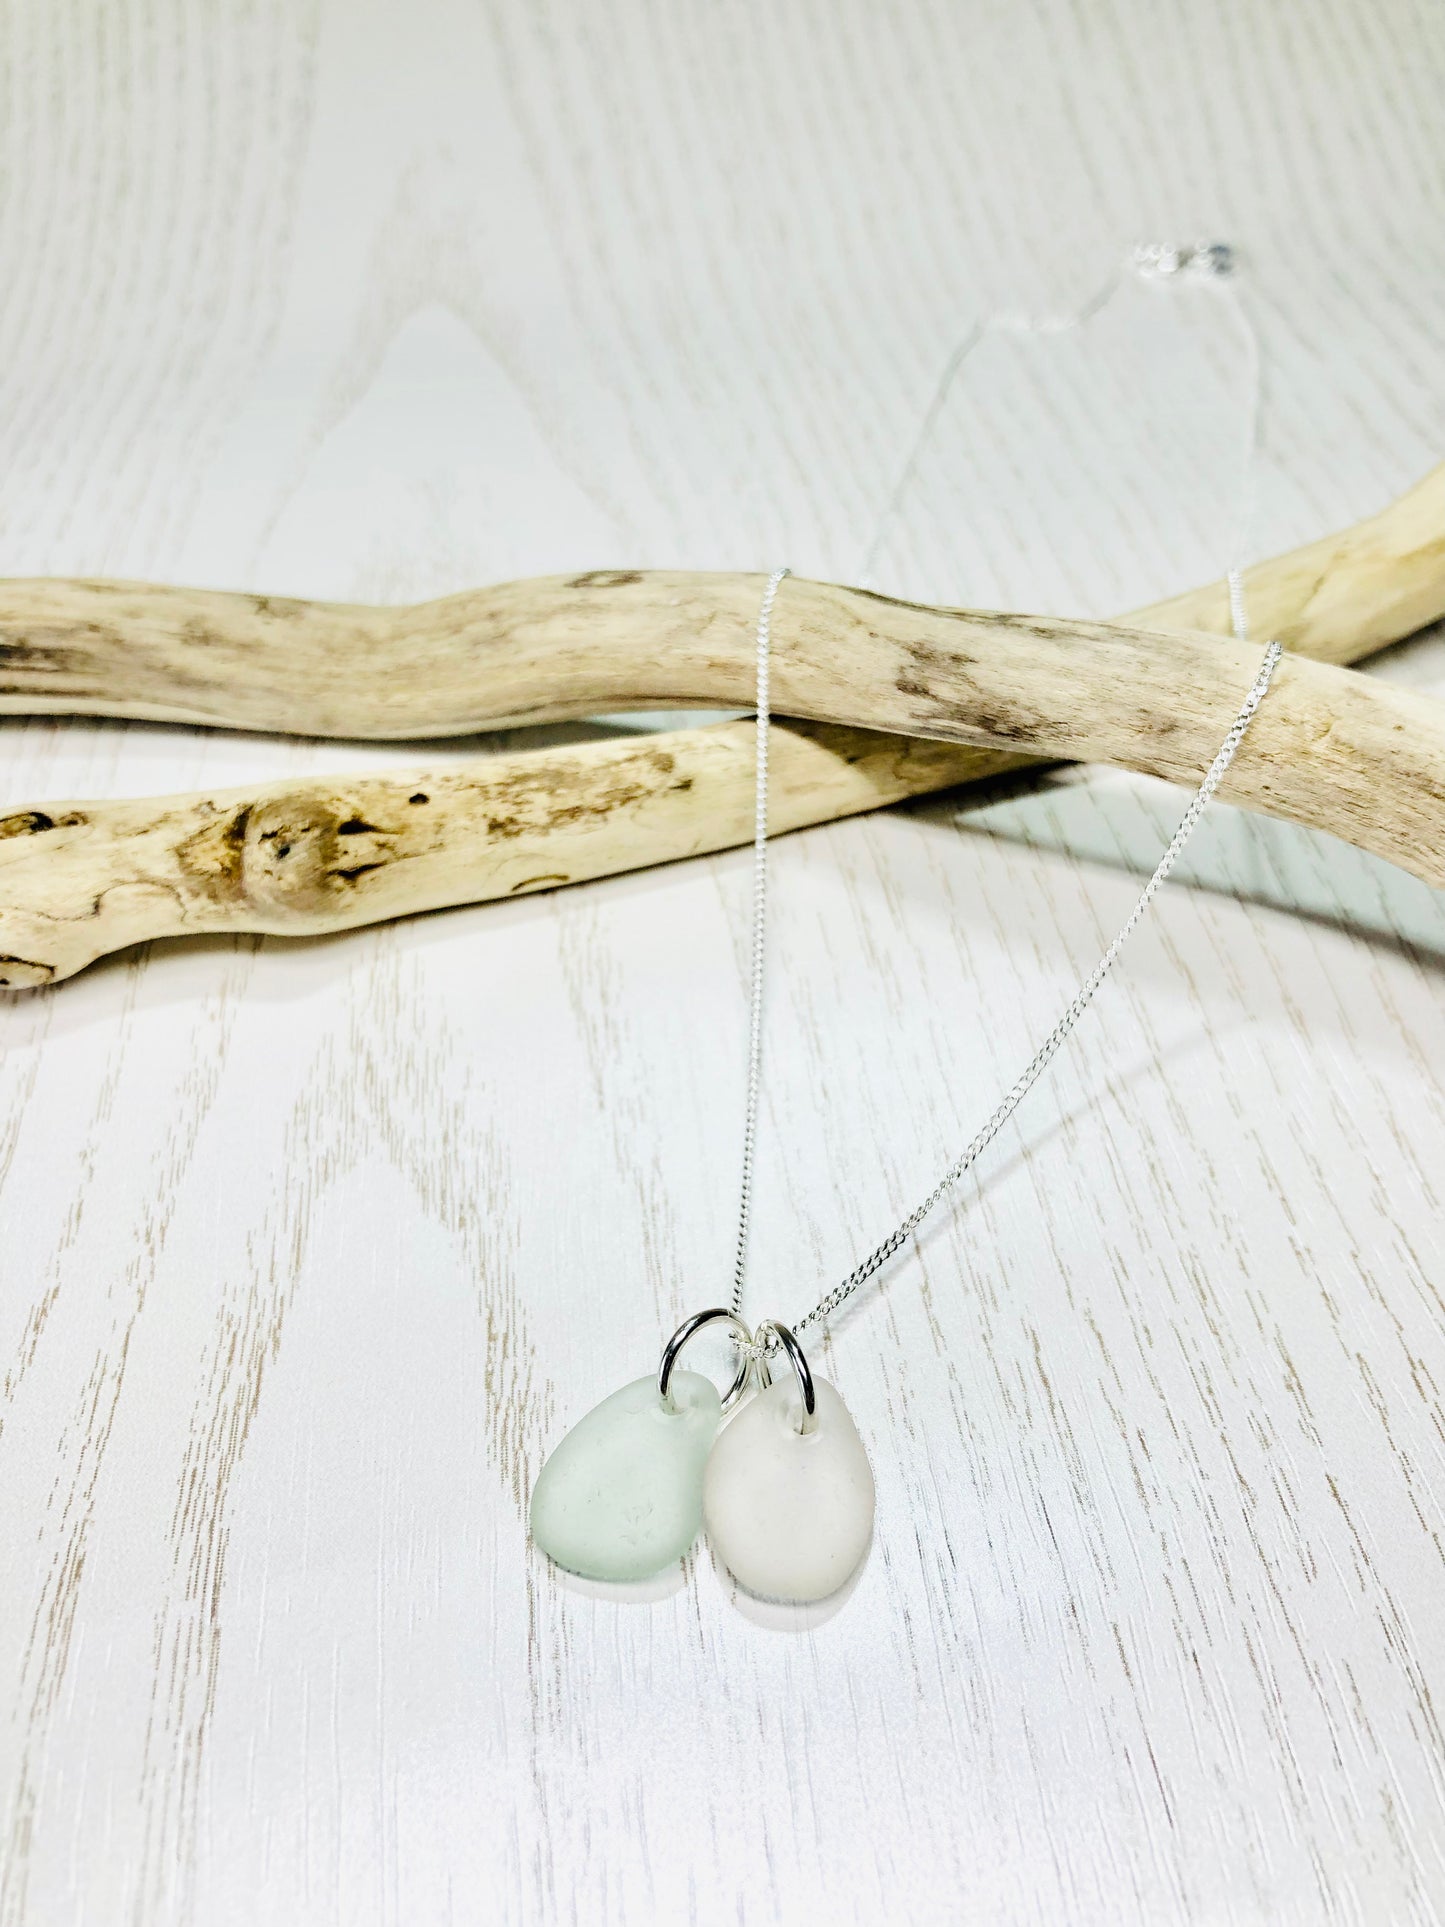 Cornish sea glass ‘duo’ necklace